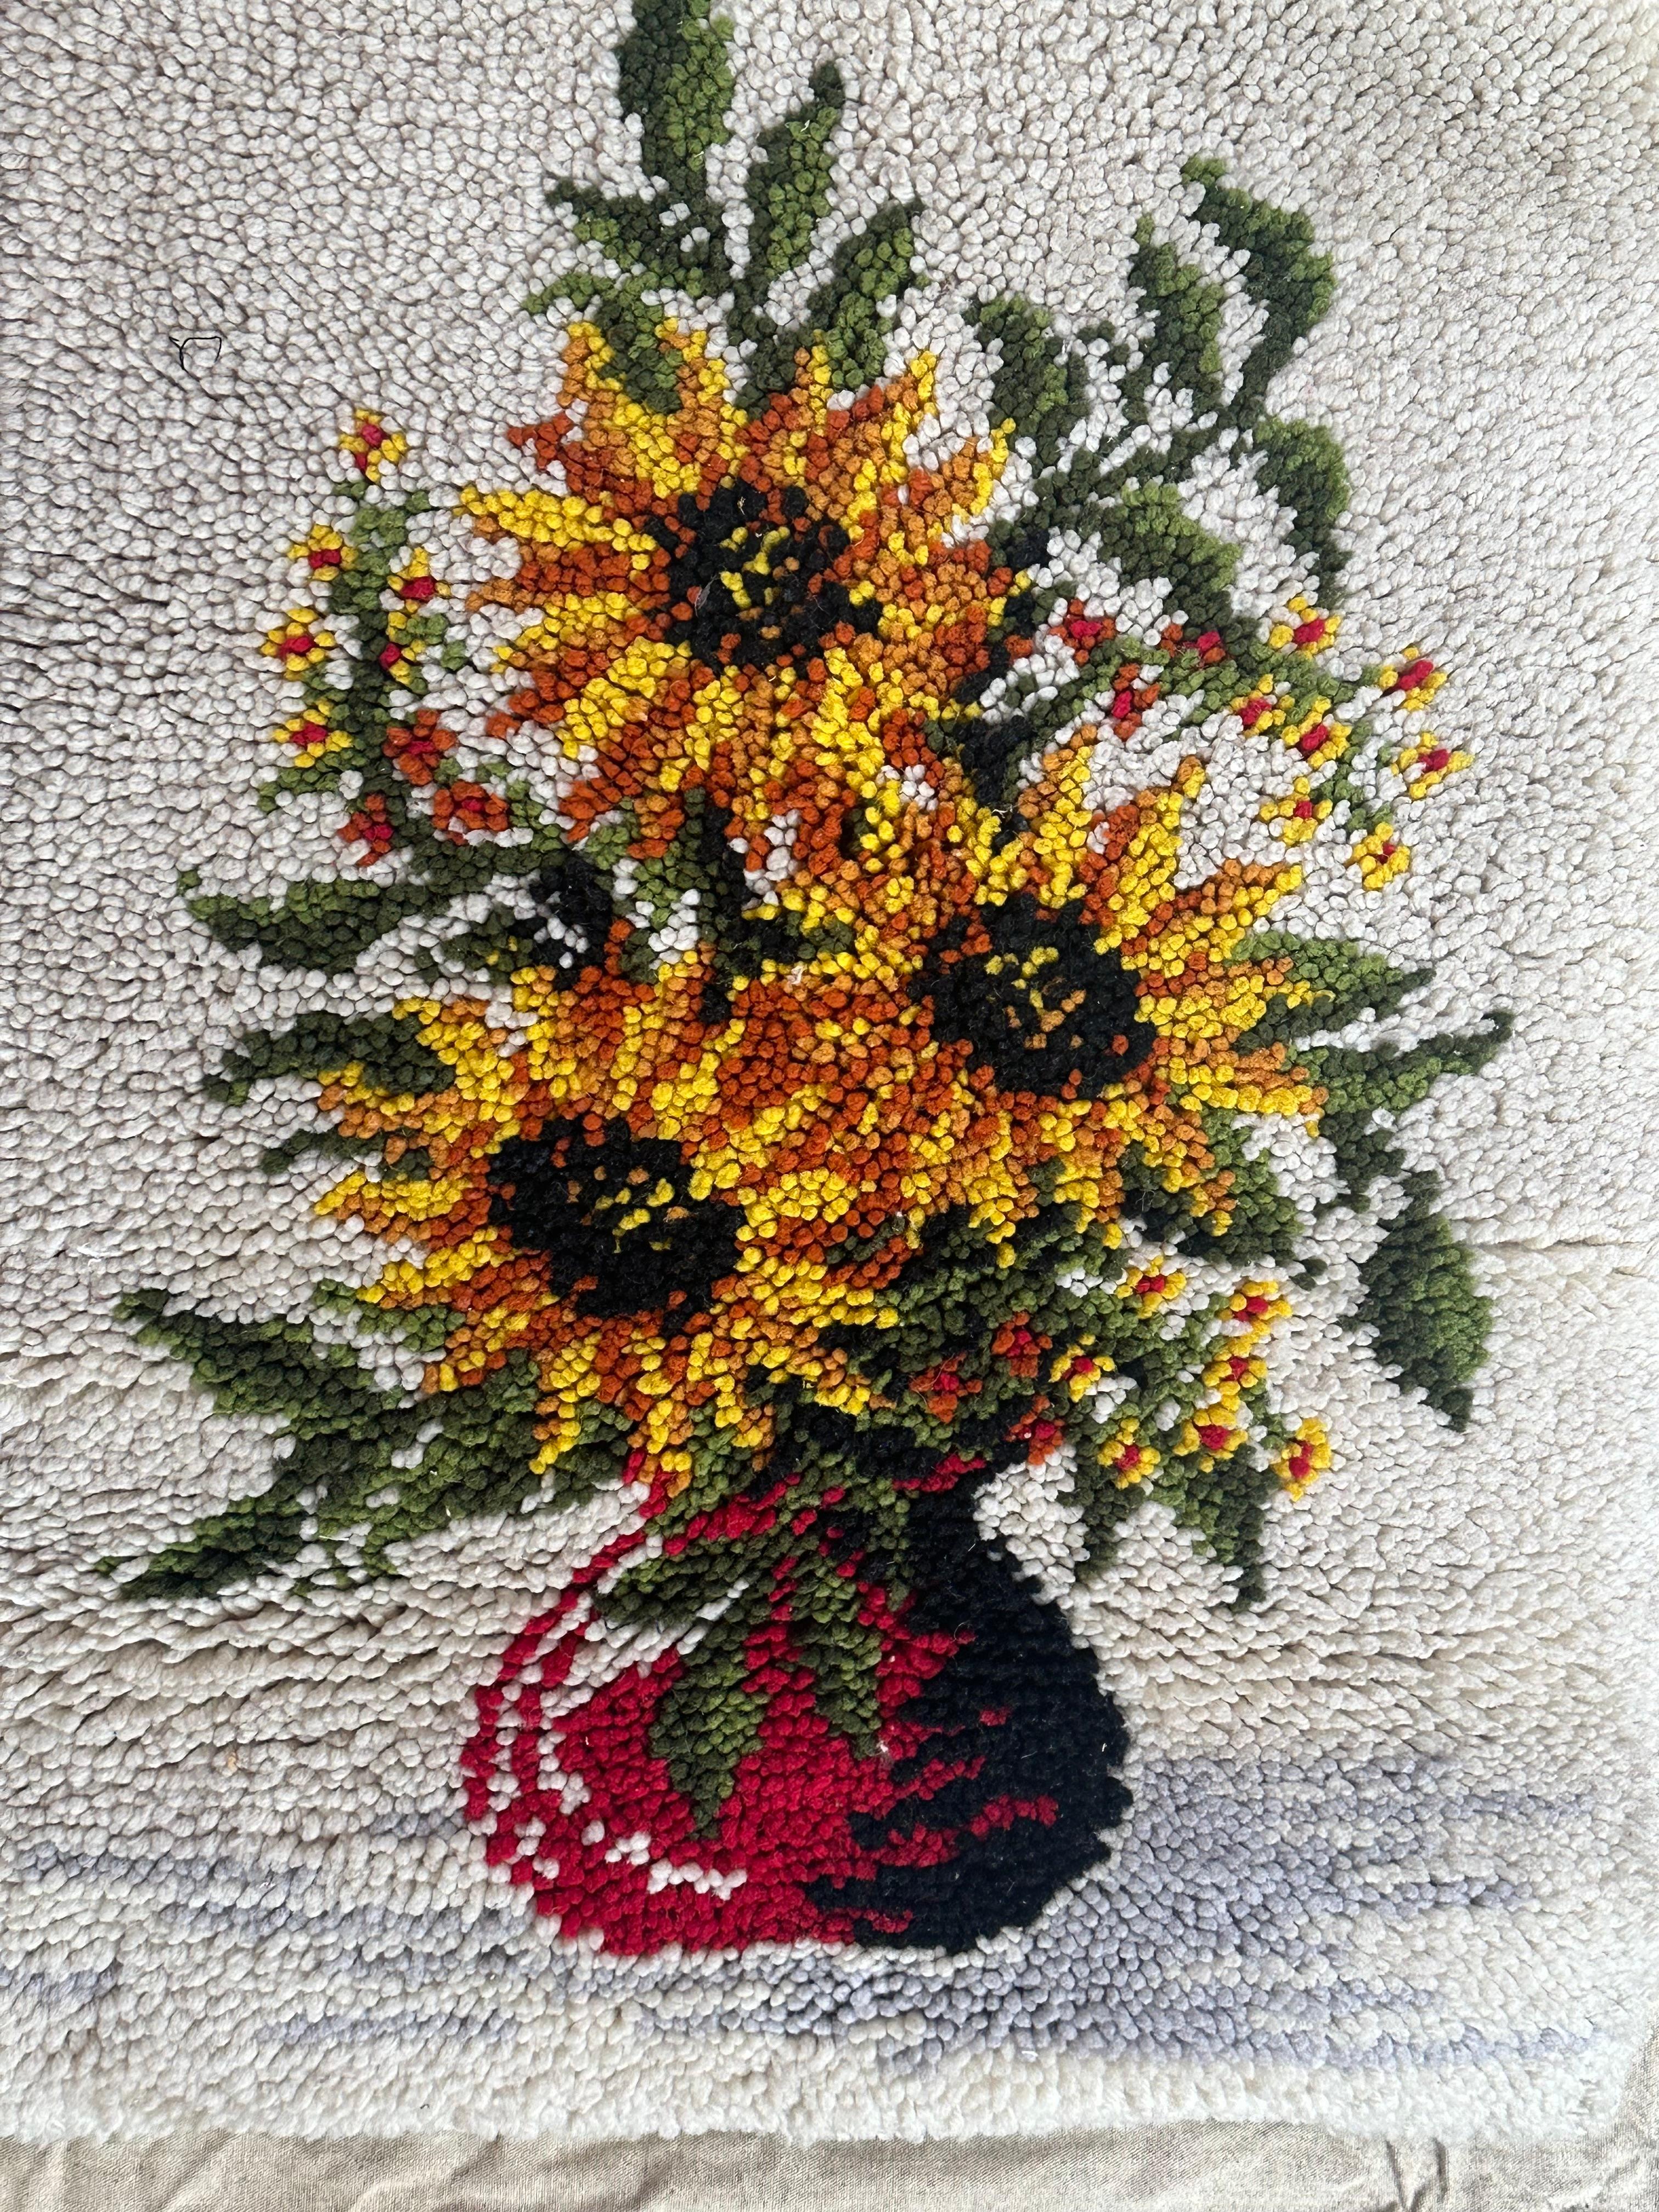 Joli tapis ou tapisserie vintage de Cogolin, avec un beau dessin d'un pot de fleurs avec de belles fleurs et de belles couleurs, entièrement noué à la main avec de la laine sur une base de coton.

✨✨✨
